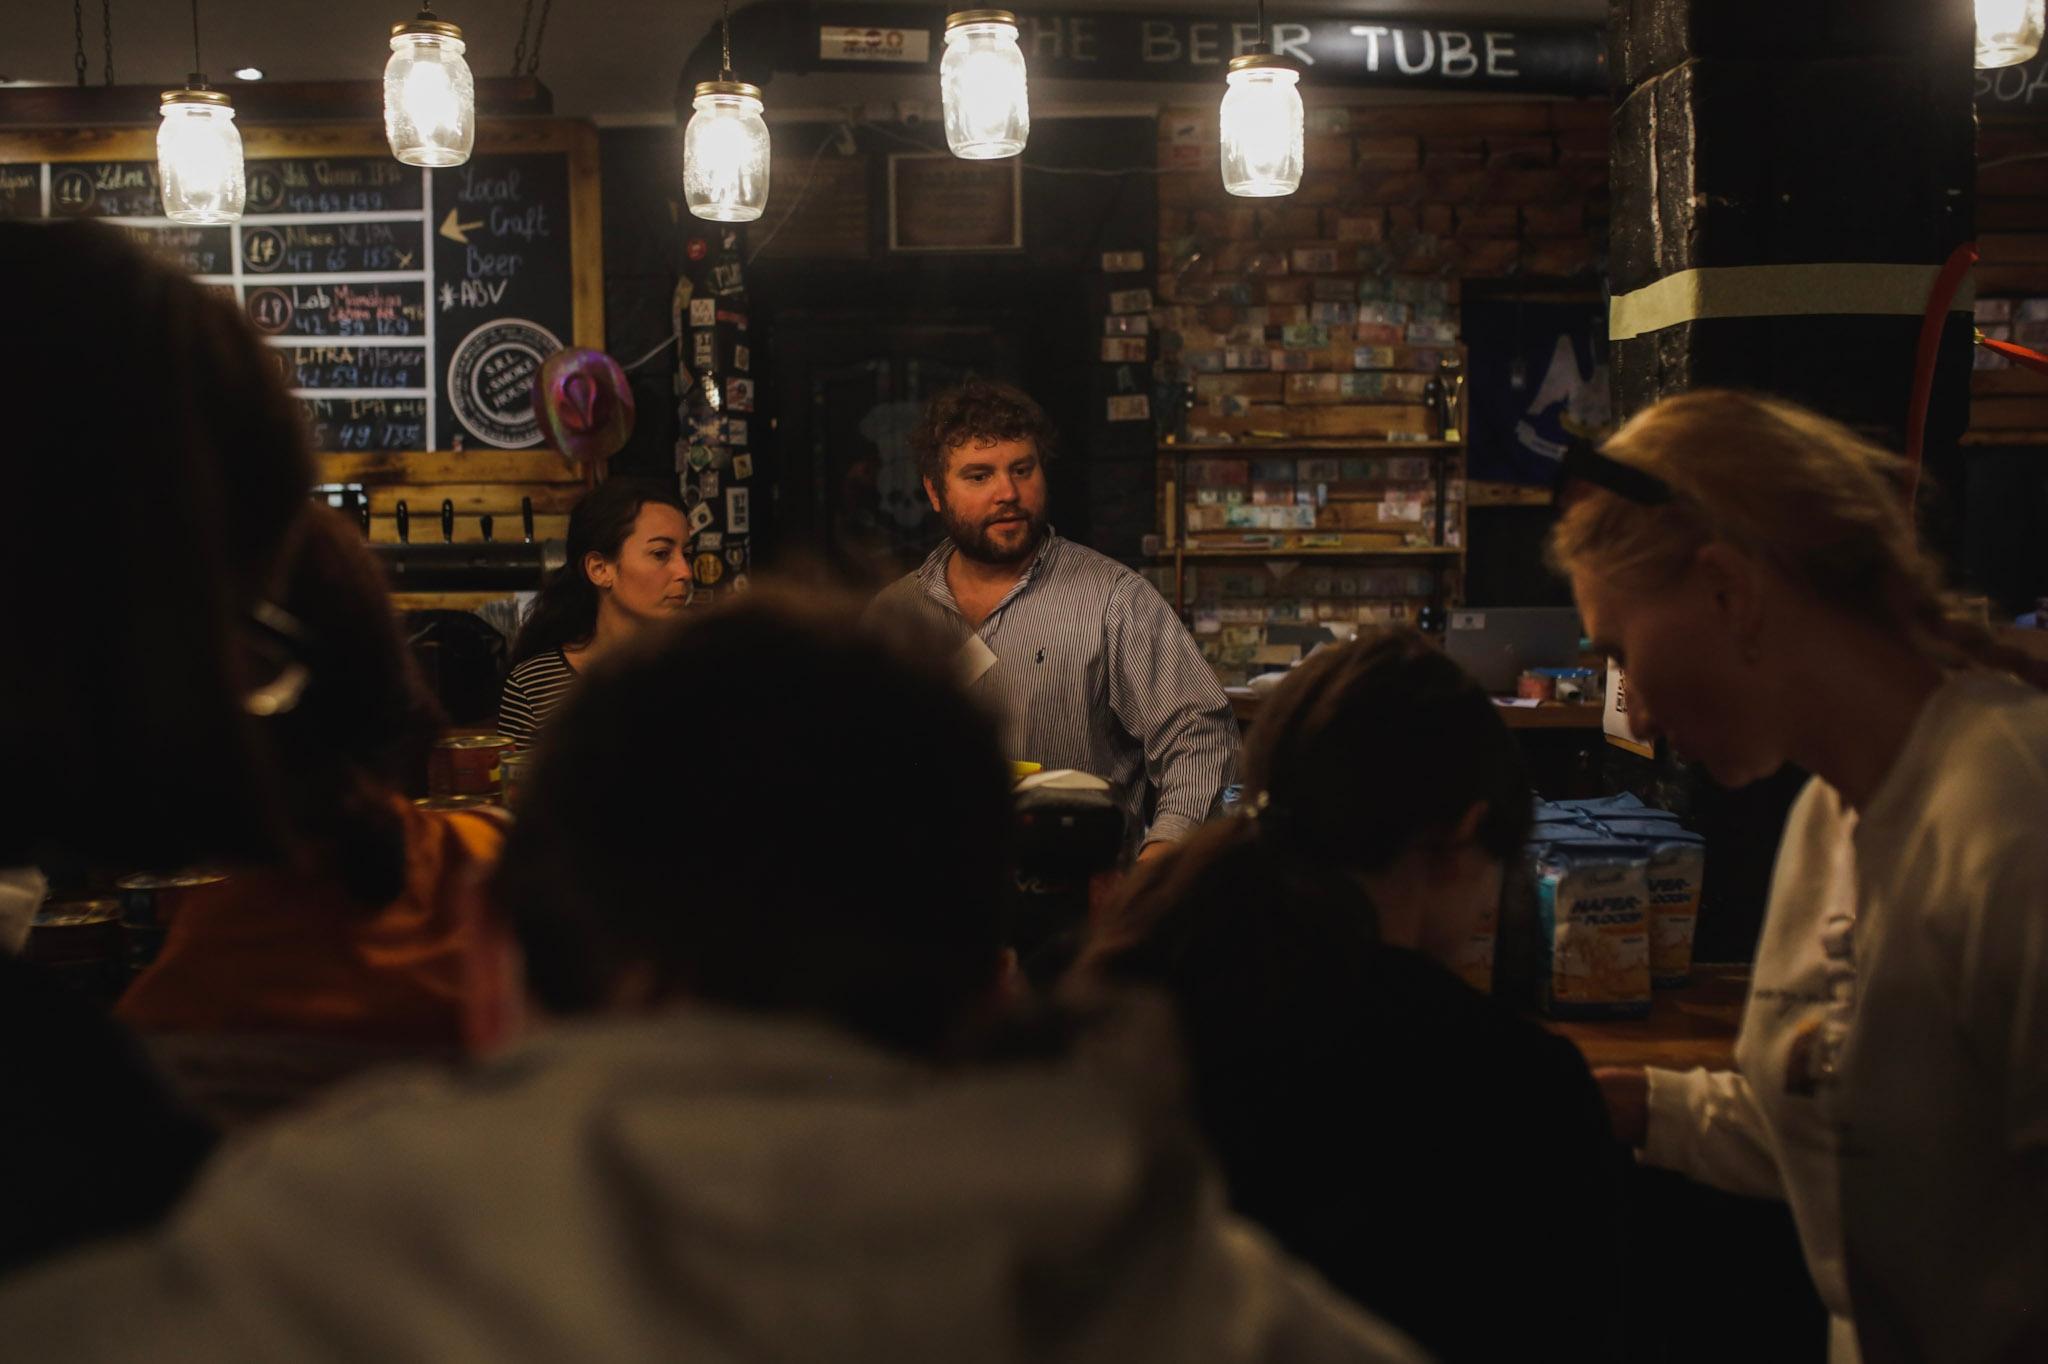 Anadolu/Getty - Bar/restaurant shelter in Chisinau